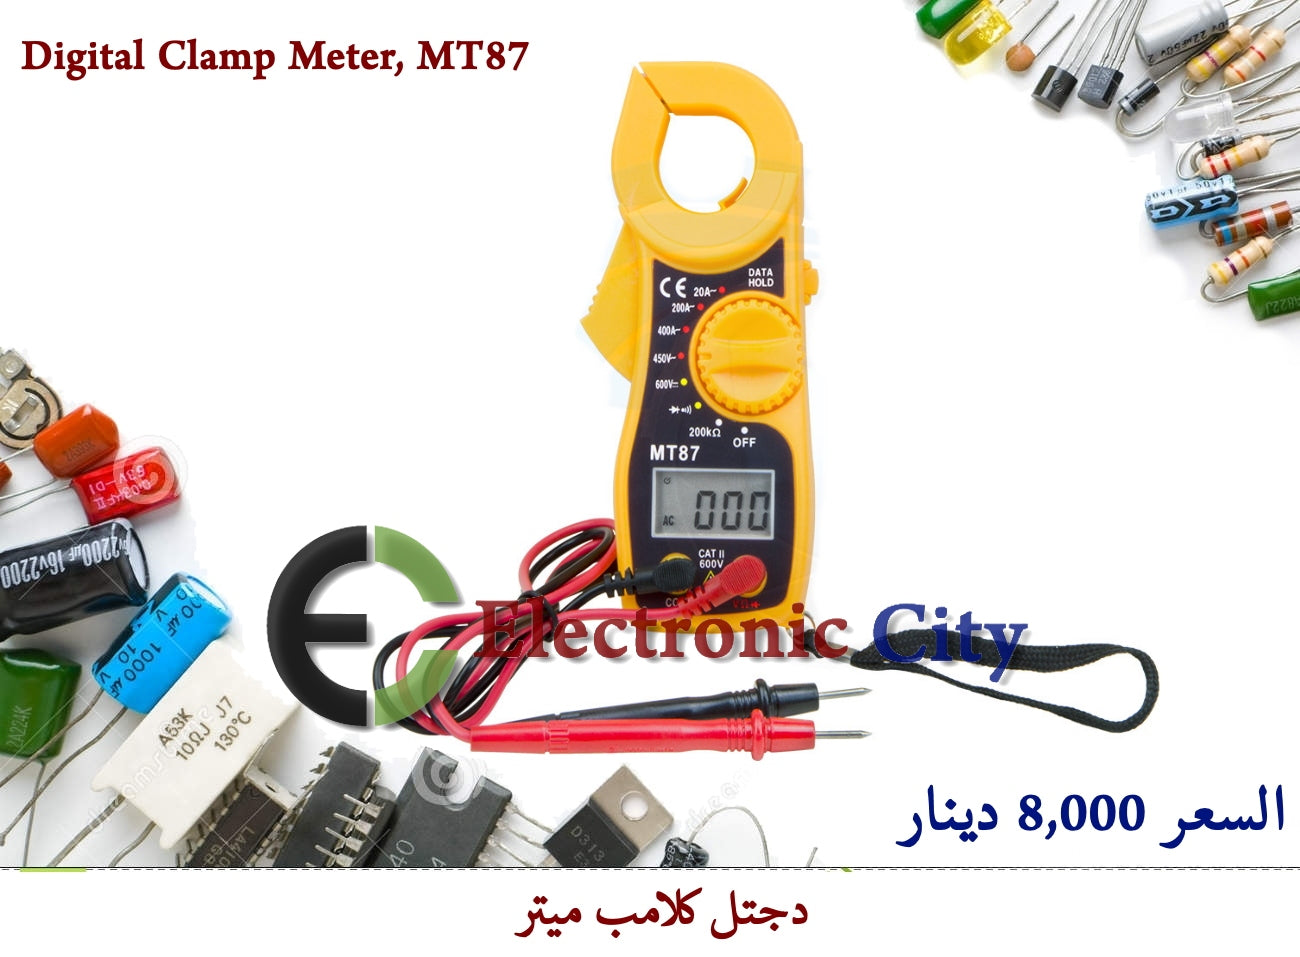 Digital Clamp Meter, MT87